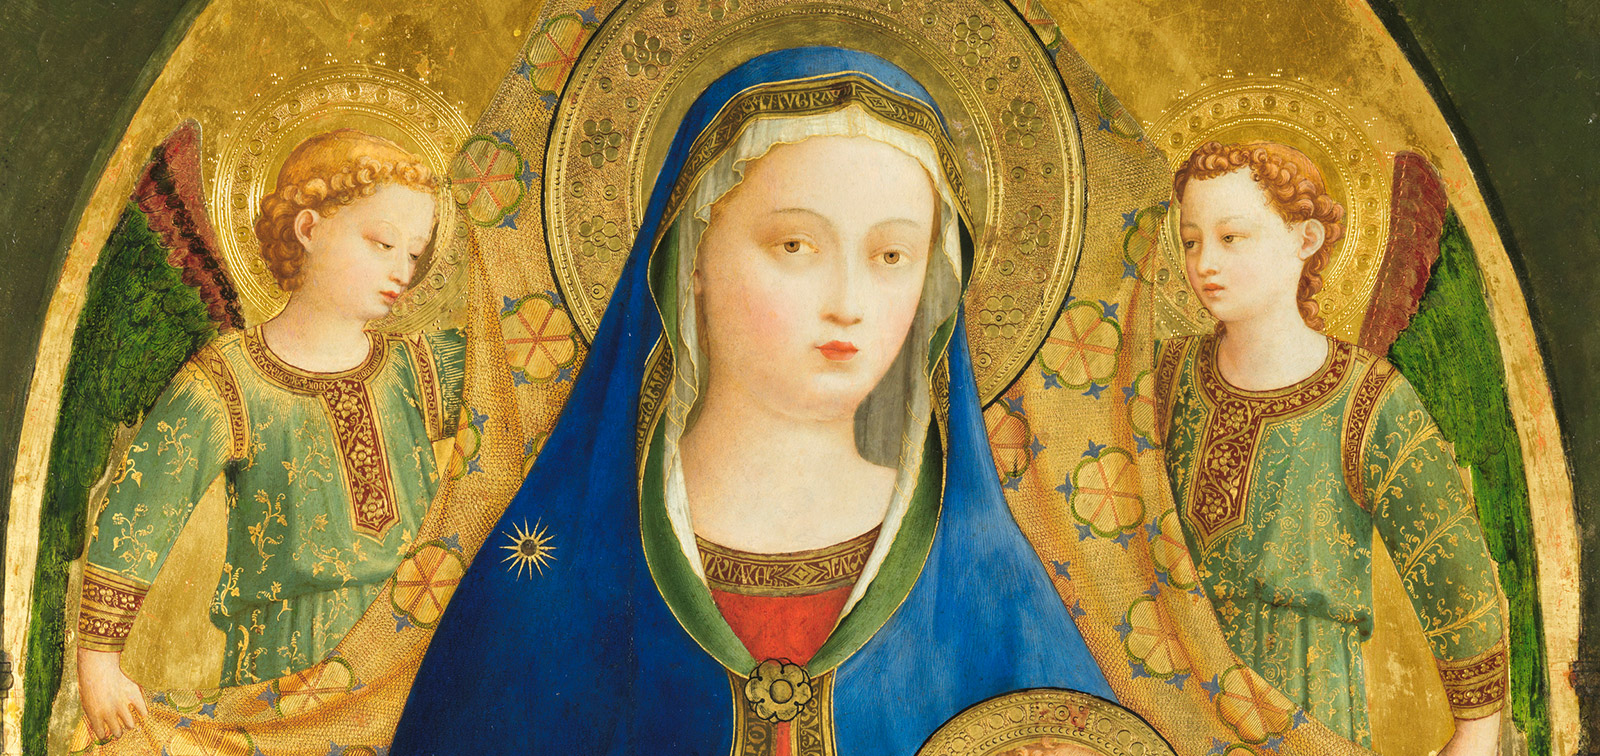 Fra Angelico y los inicios del Renacimiento en Florencia